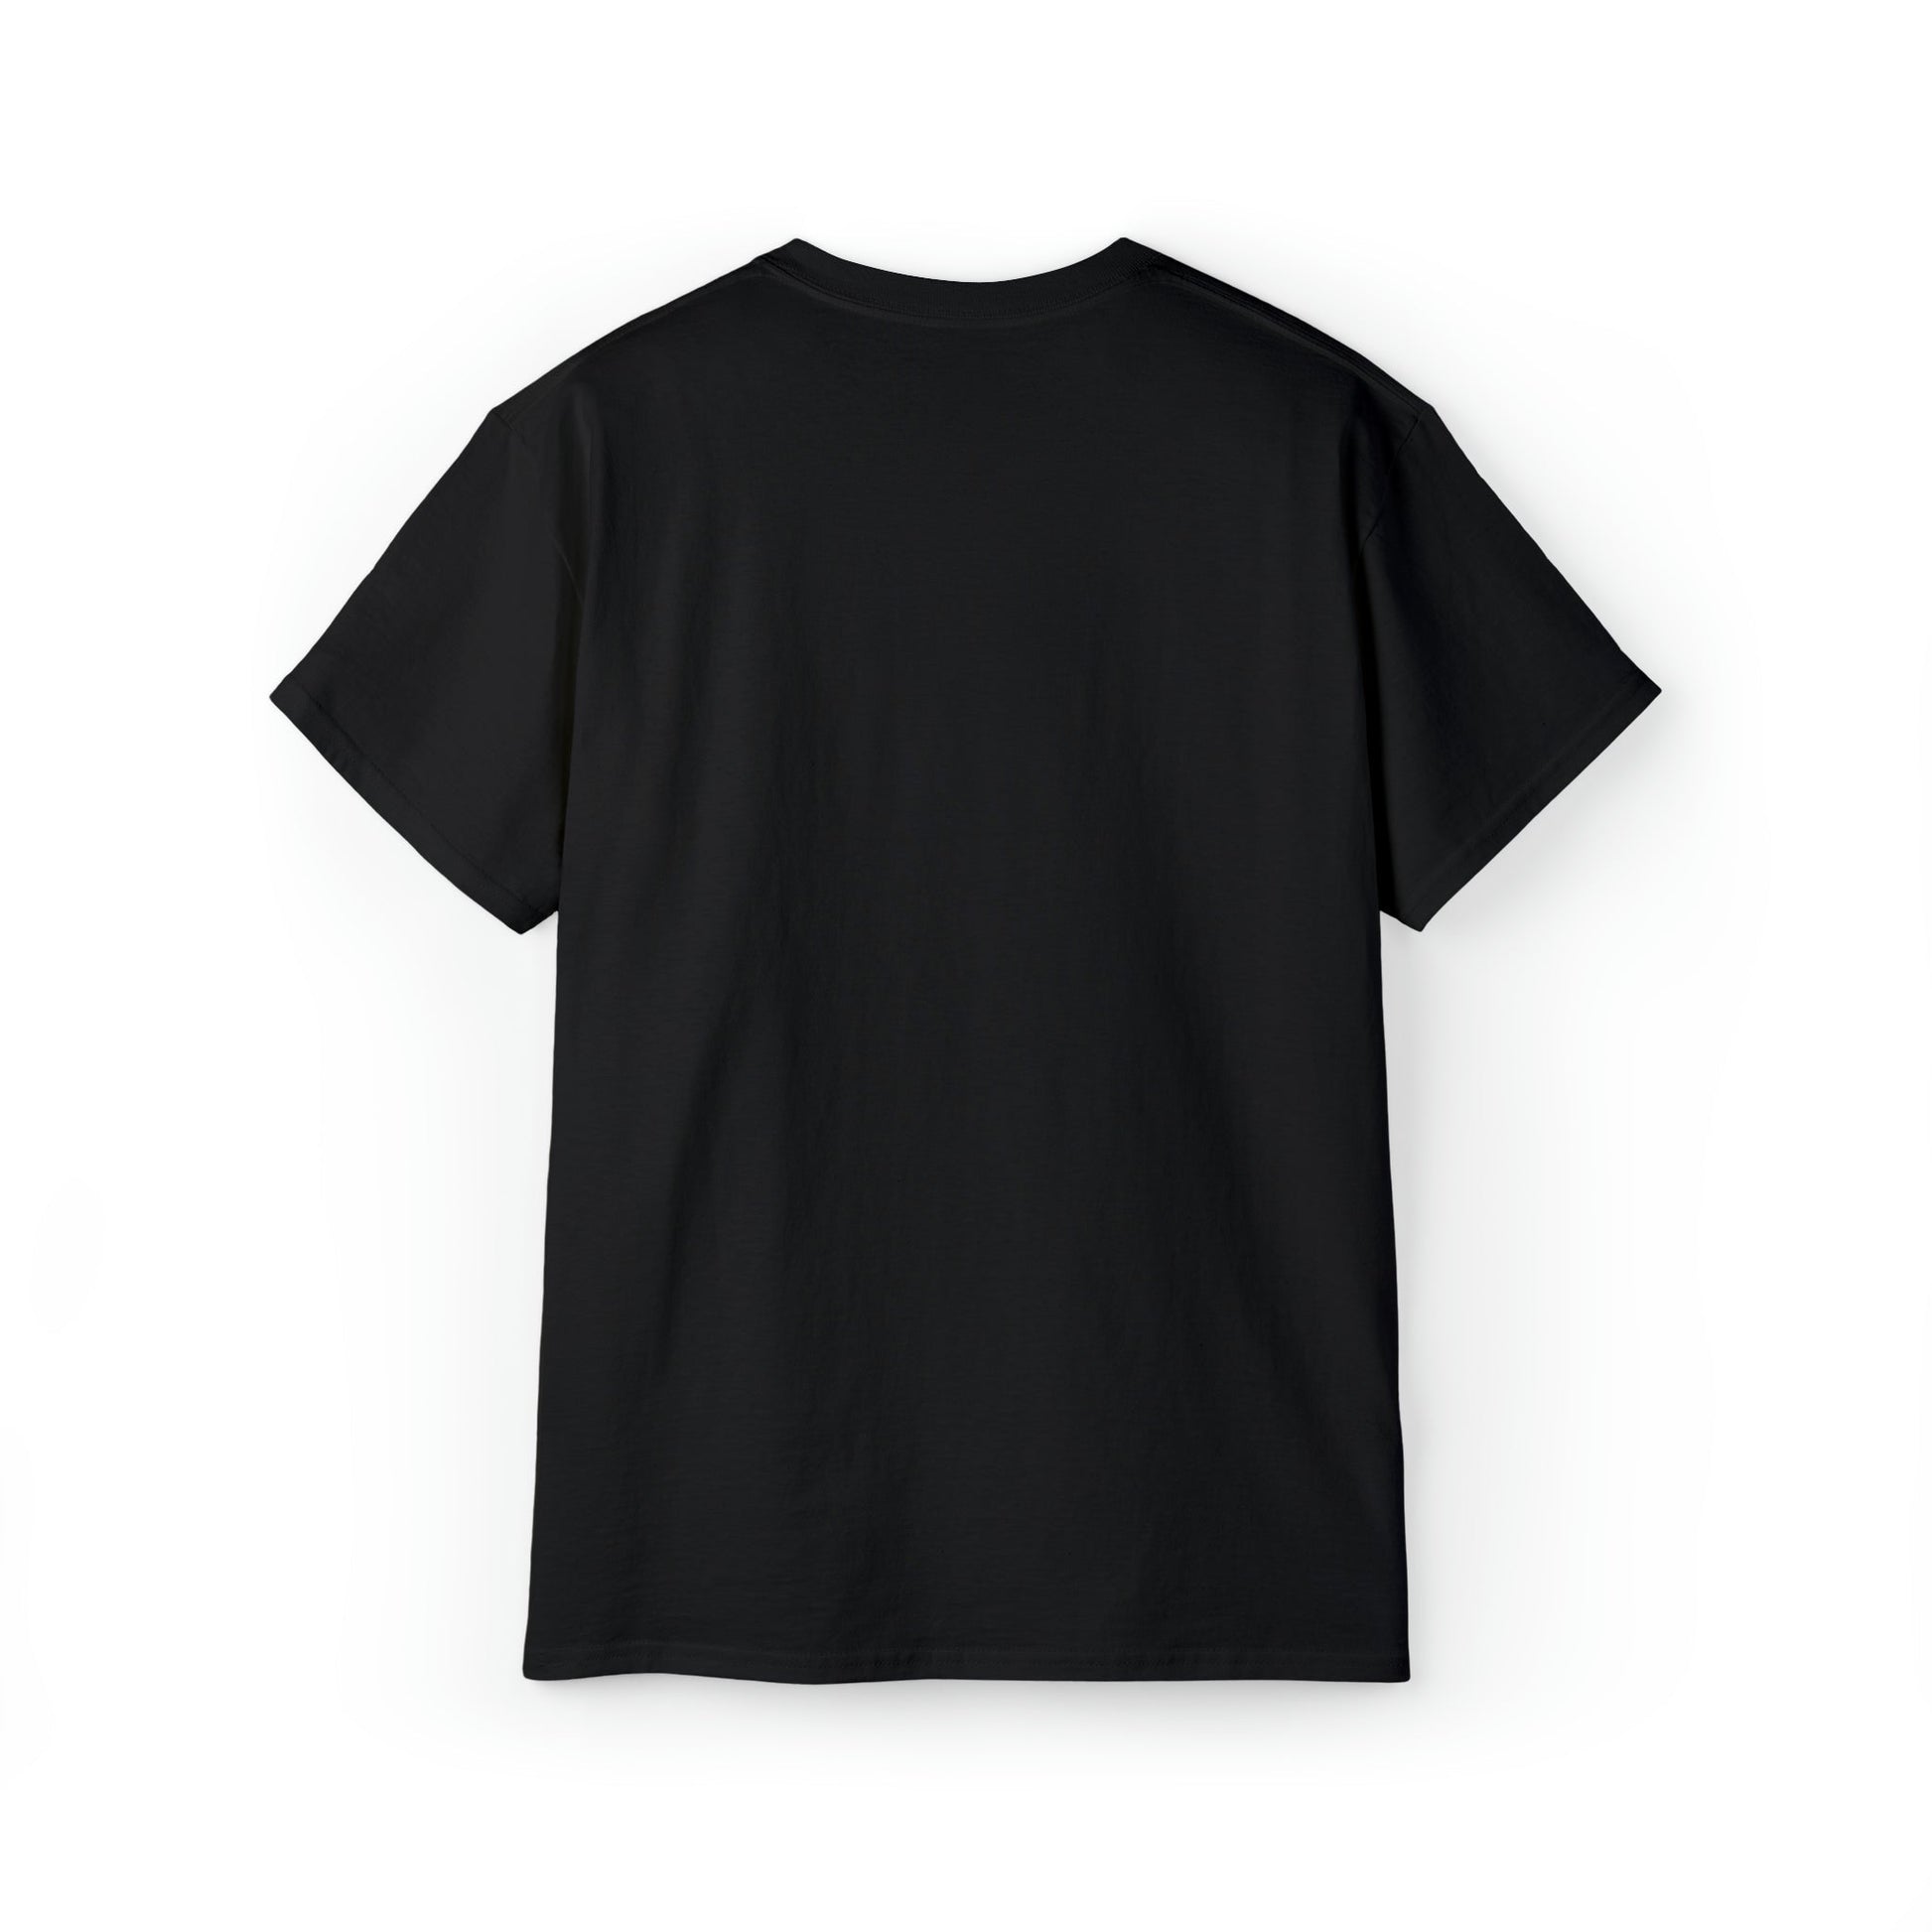 Printify T-Shirt Warrior V12  V.K.N.G™ T-Shirt